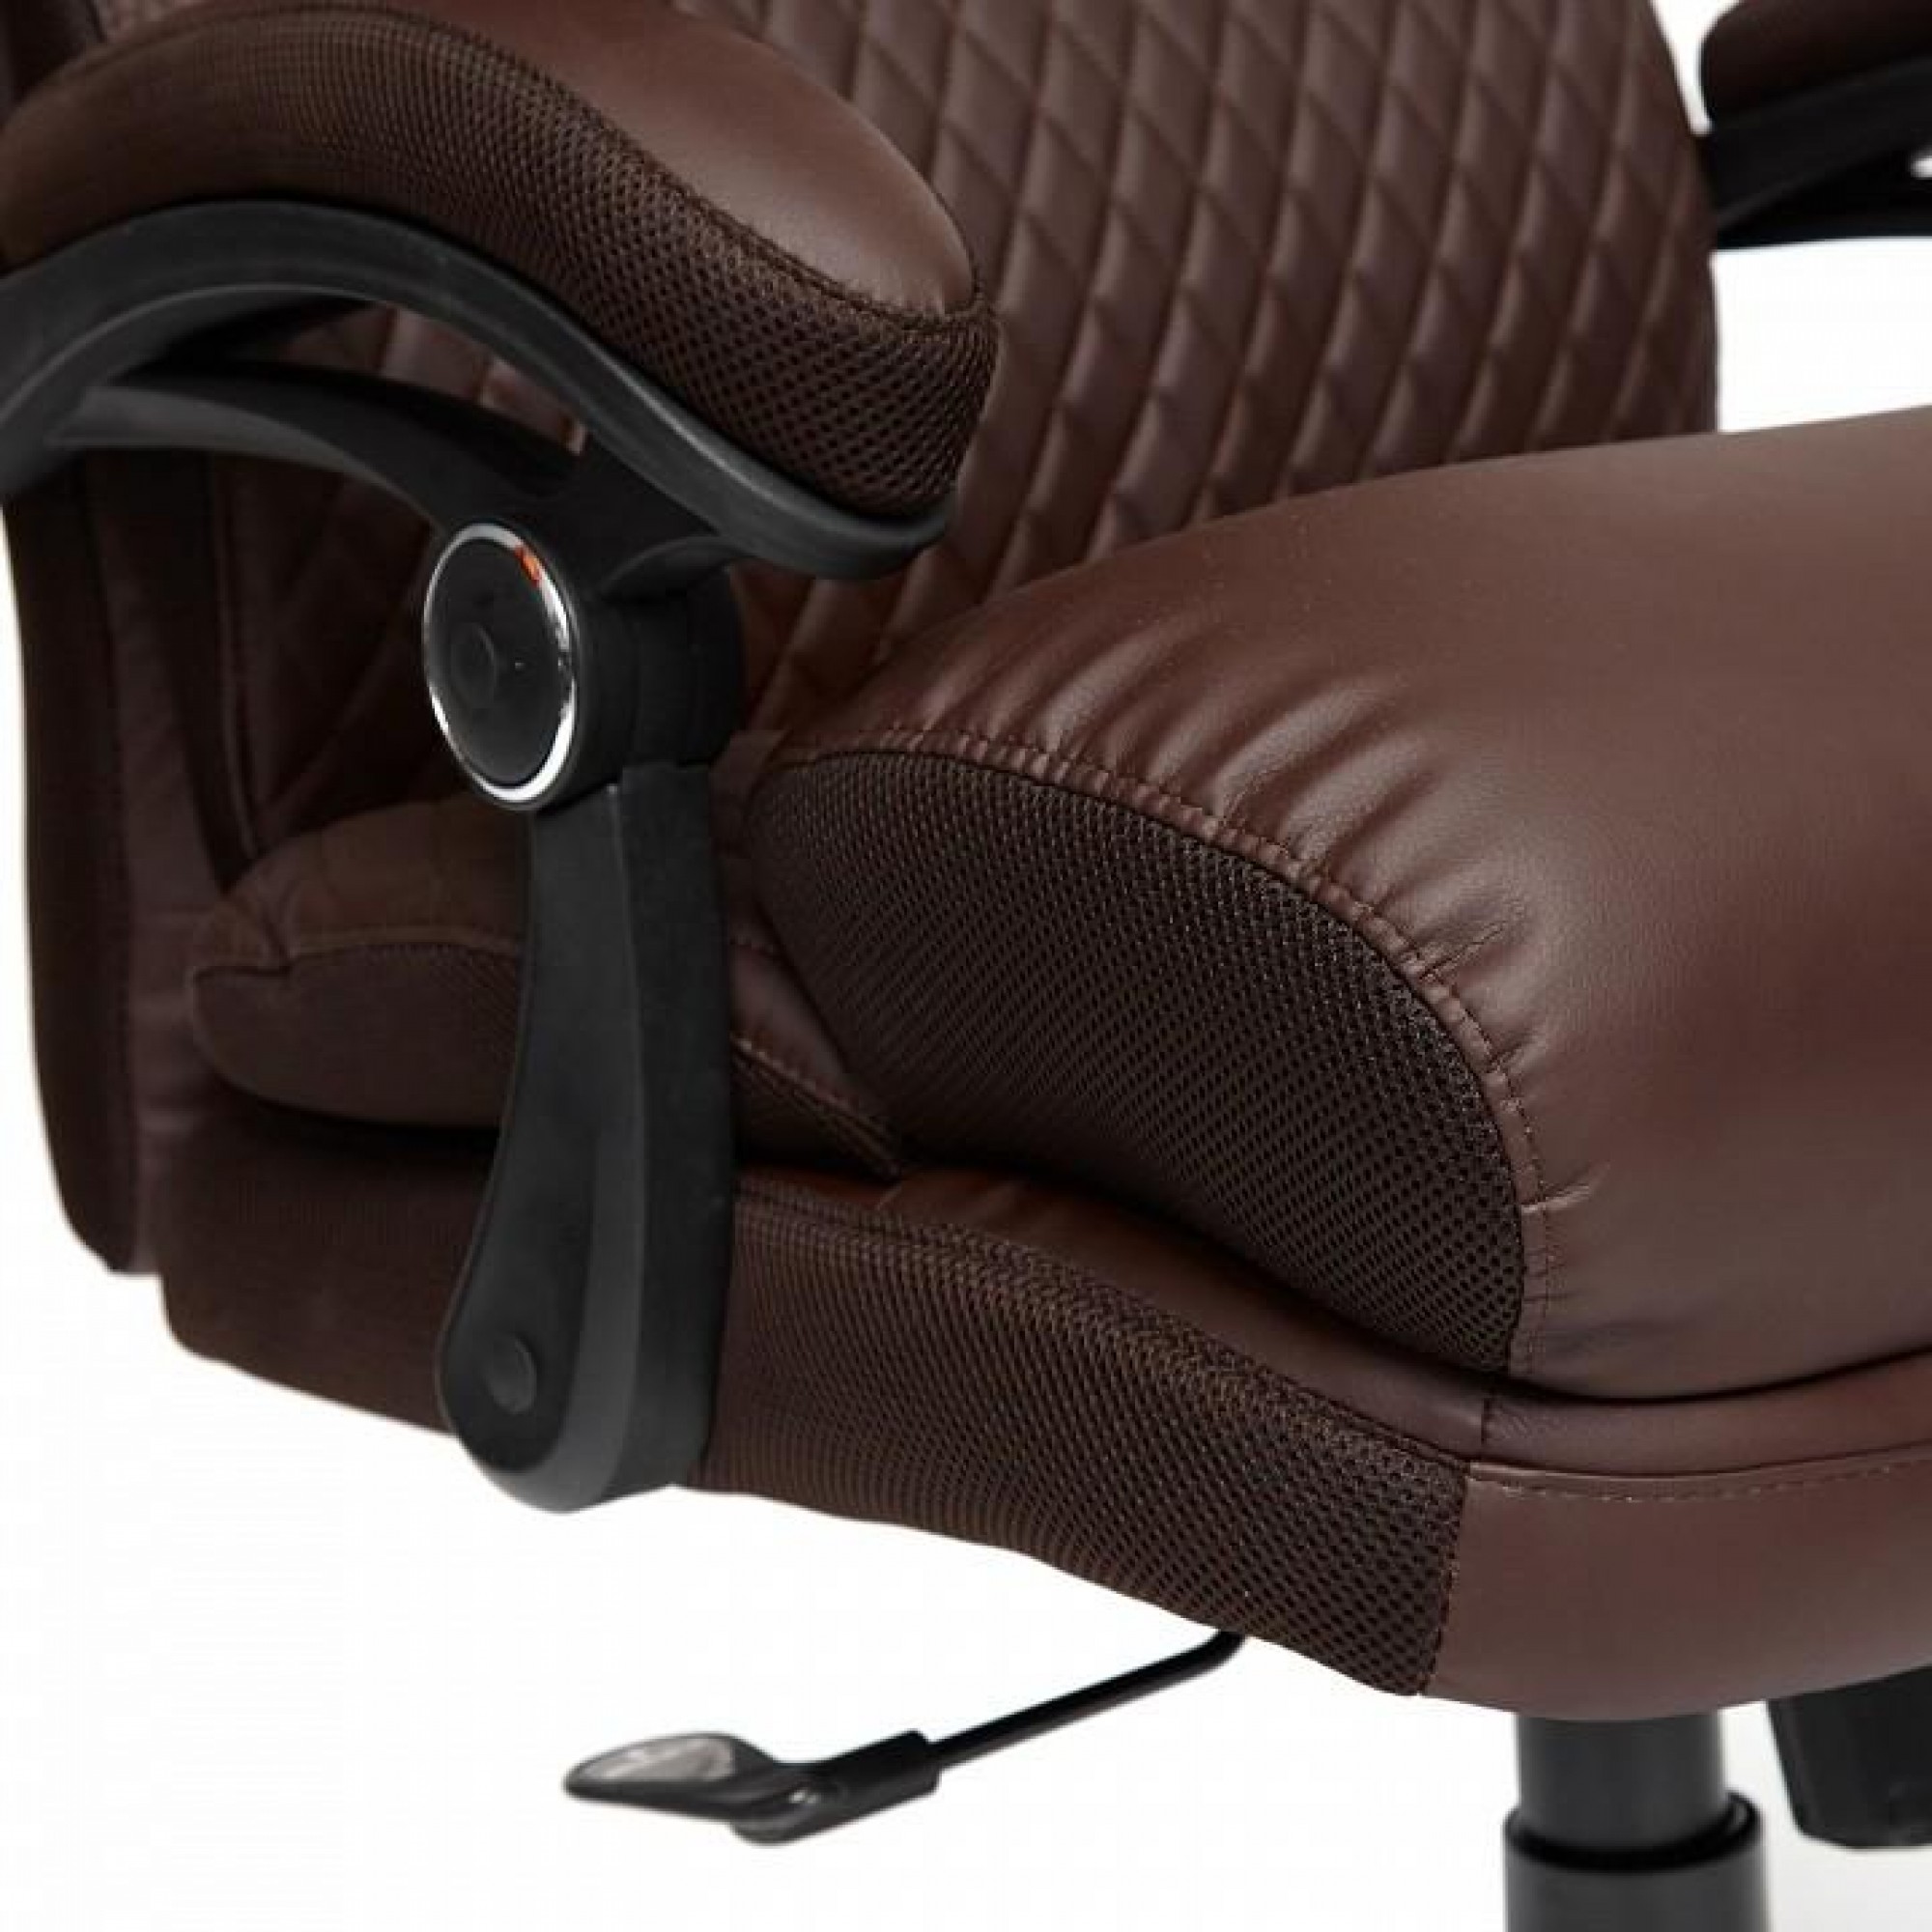 Кресло для руководителя Chief коричневый 660x490x1200-1300(TET_13111)